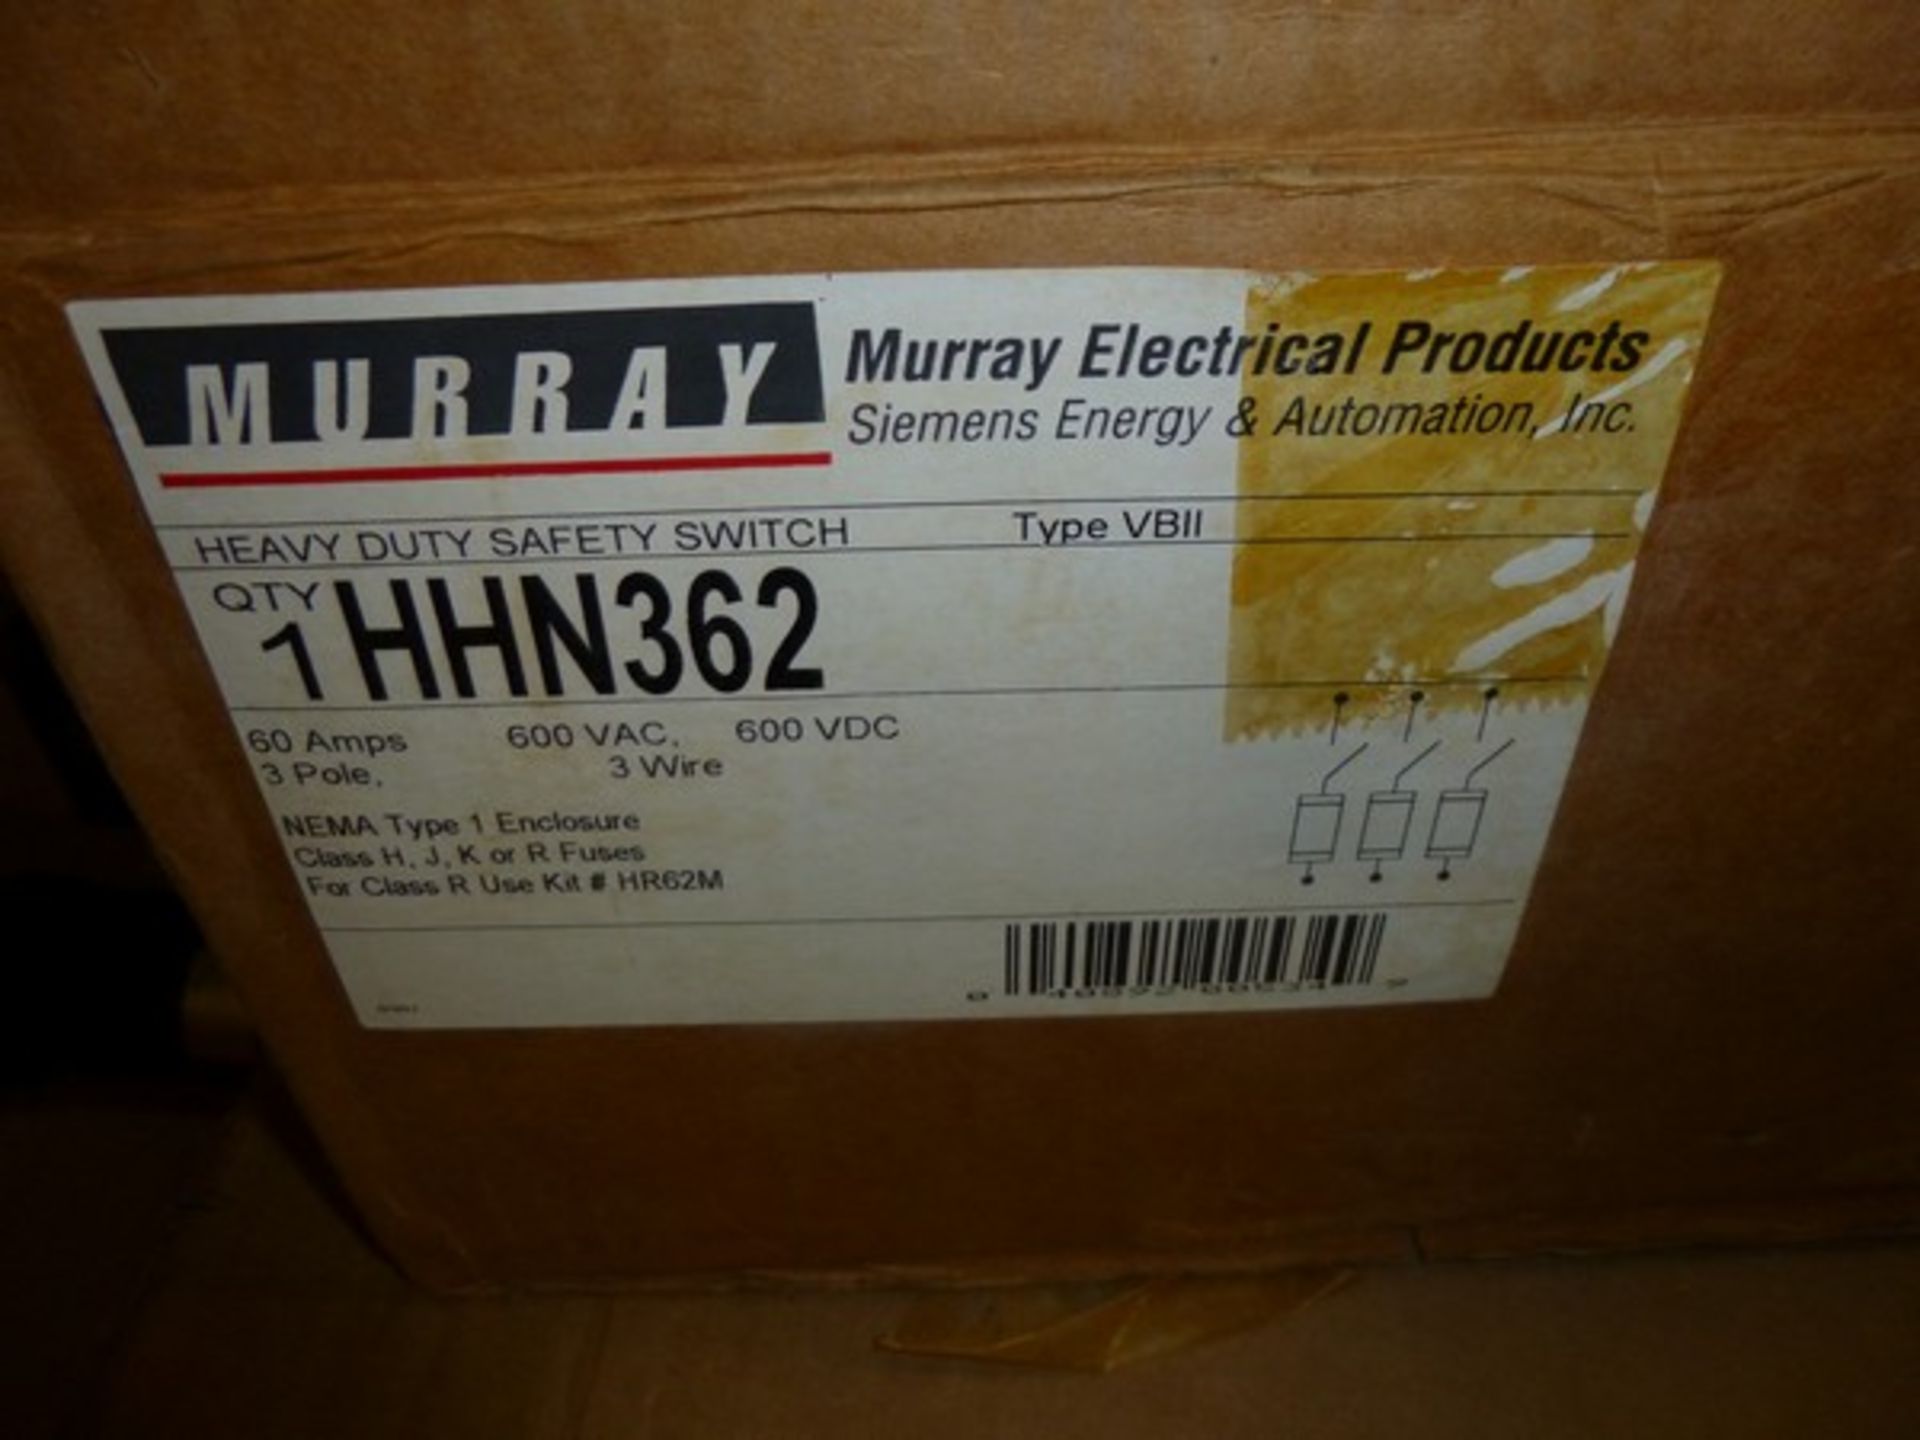 Murray 60amp disconeect 600vac 600vdc model # HHN362 new in box - Image 2 of 2